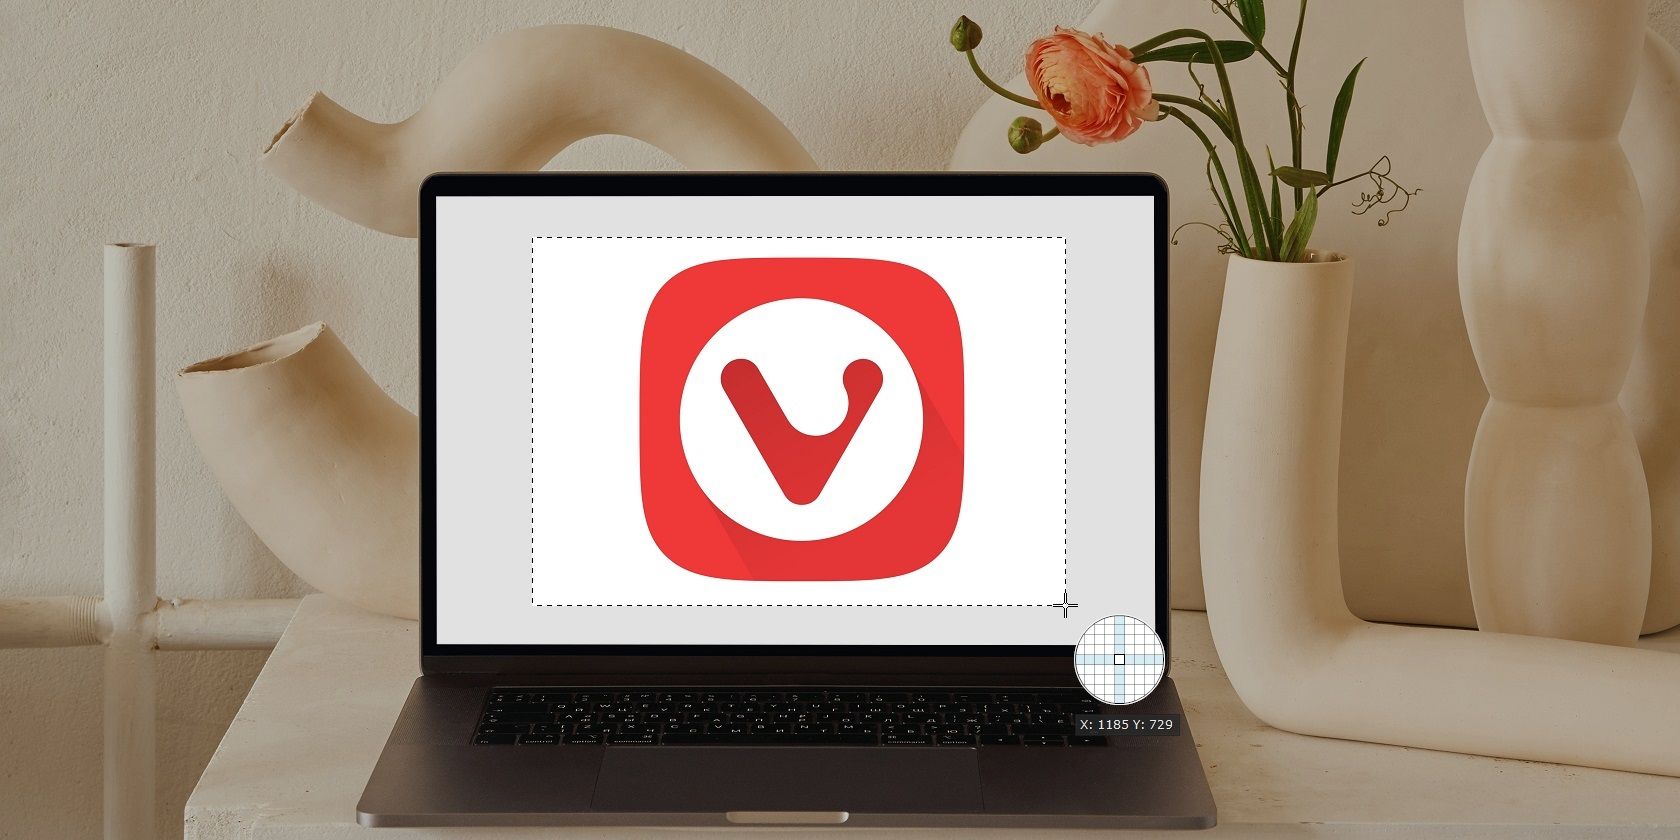 Laptop with Vivaldi Logo has Screenshots Taken